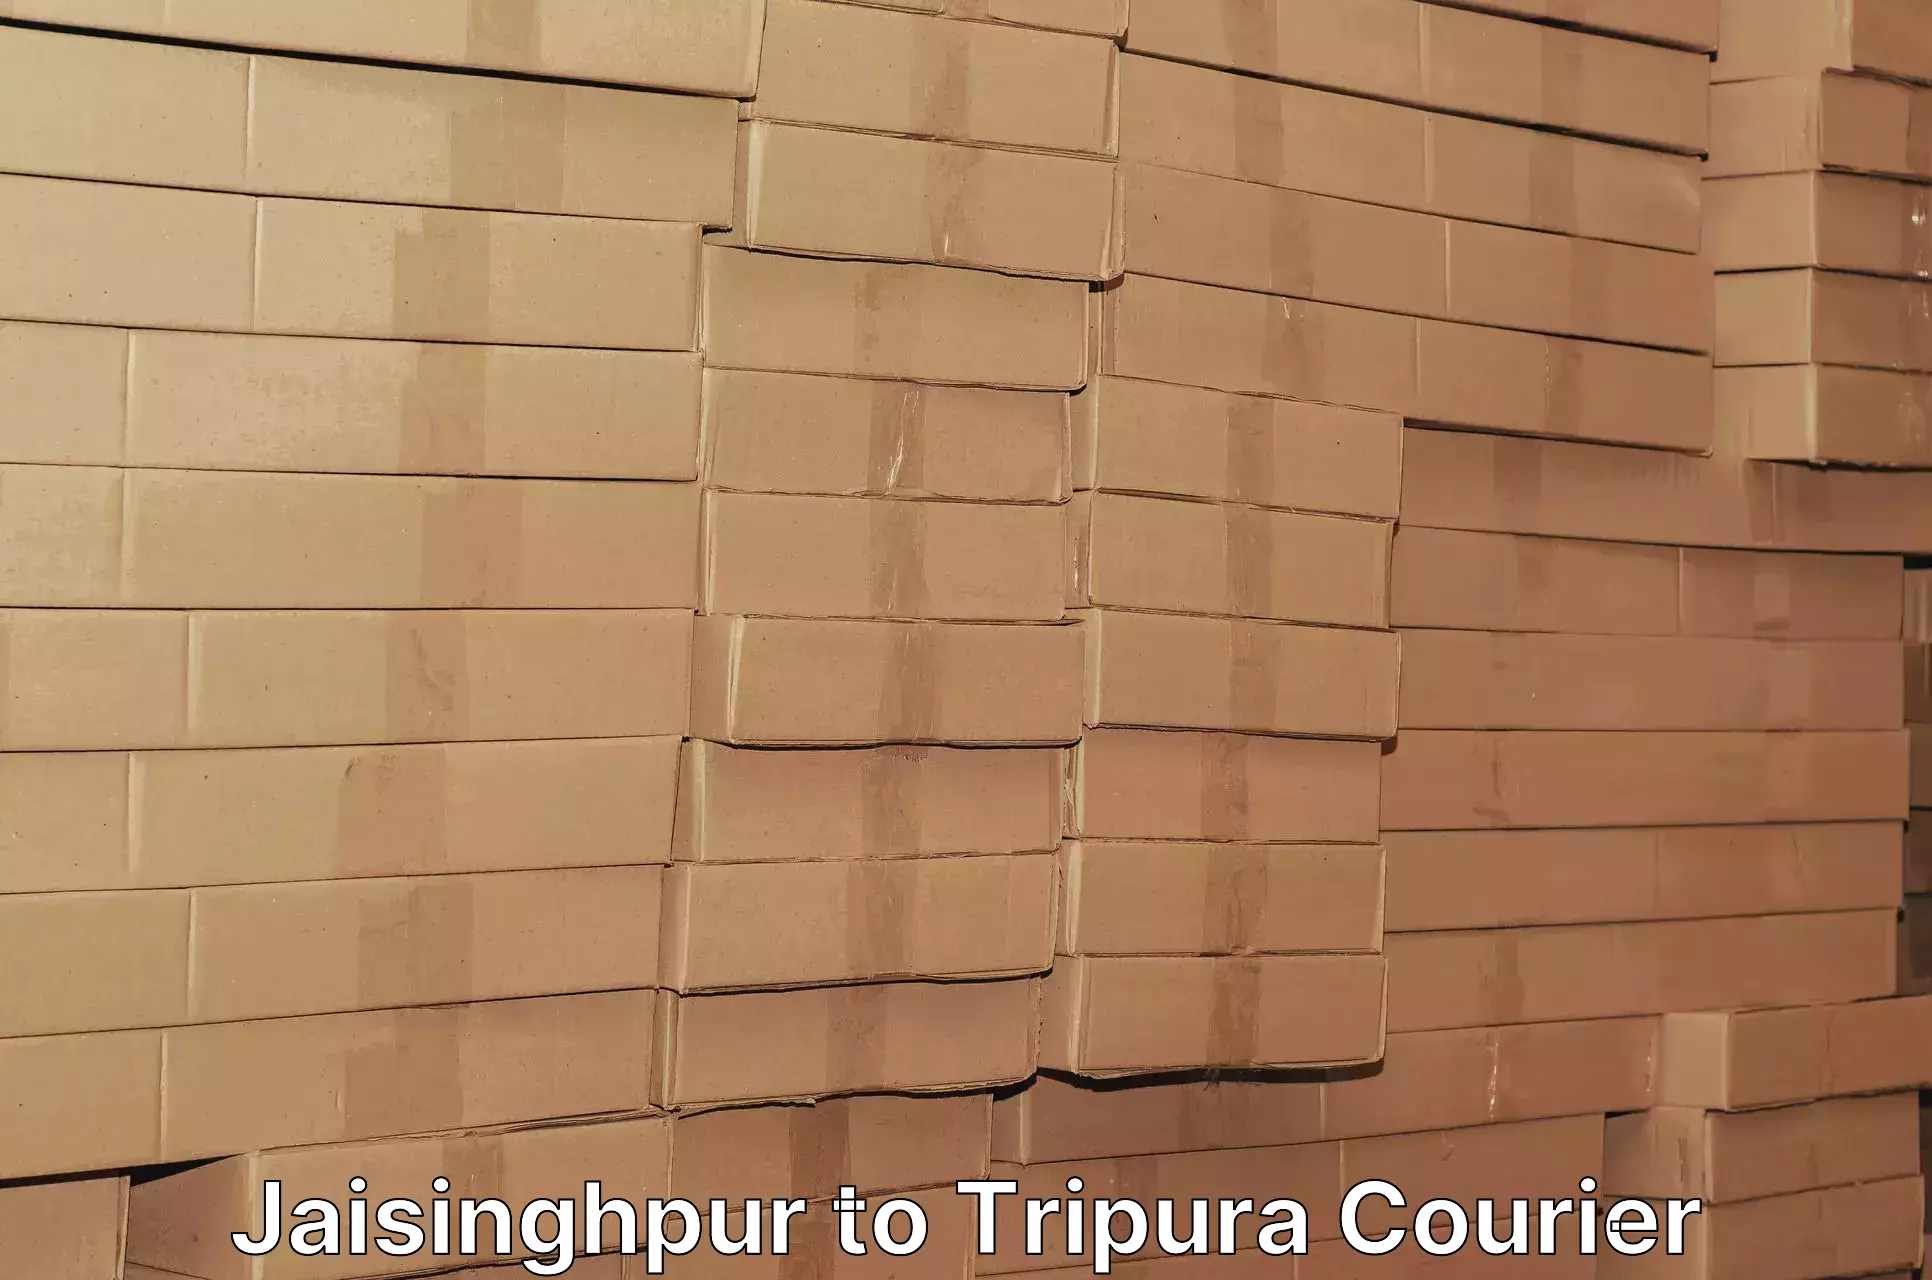 Smart logistics solutions in Jaisinghpur to Tripura